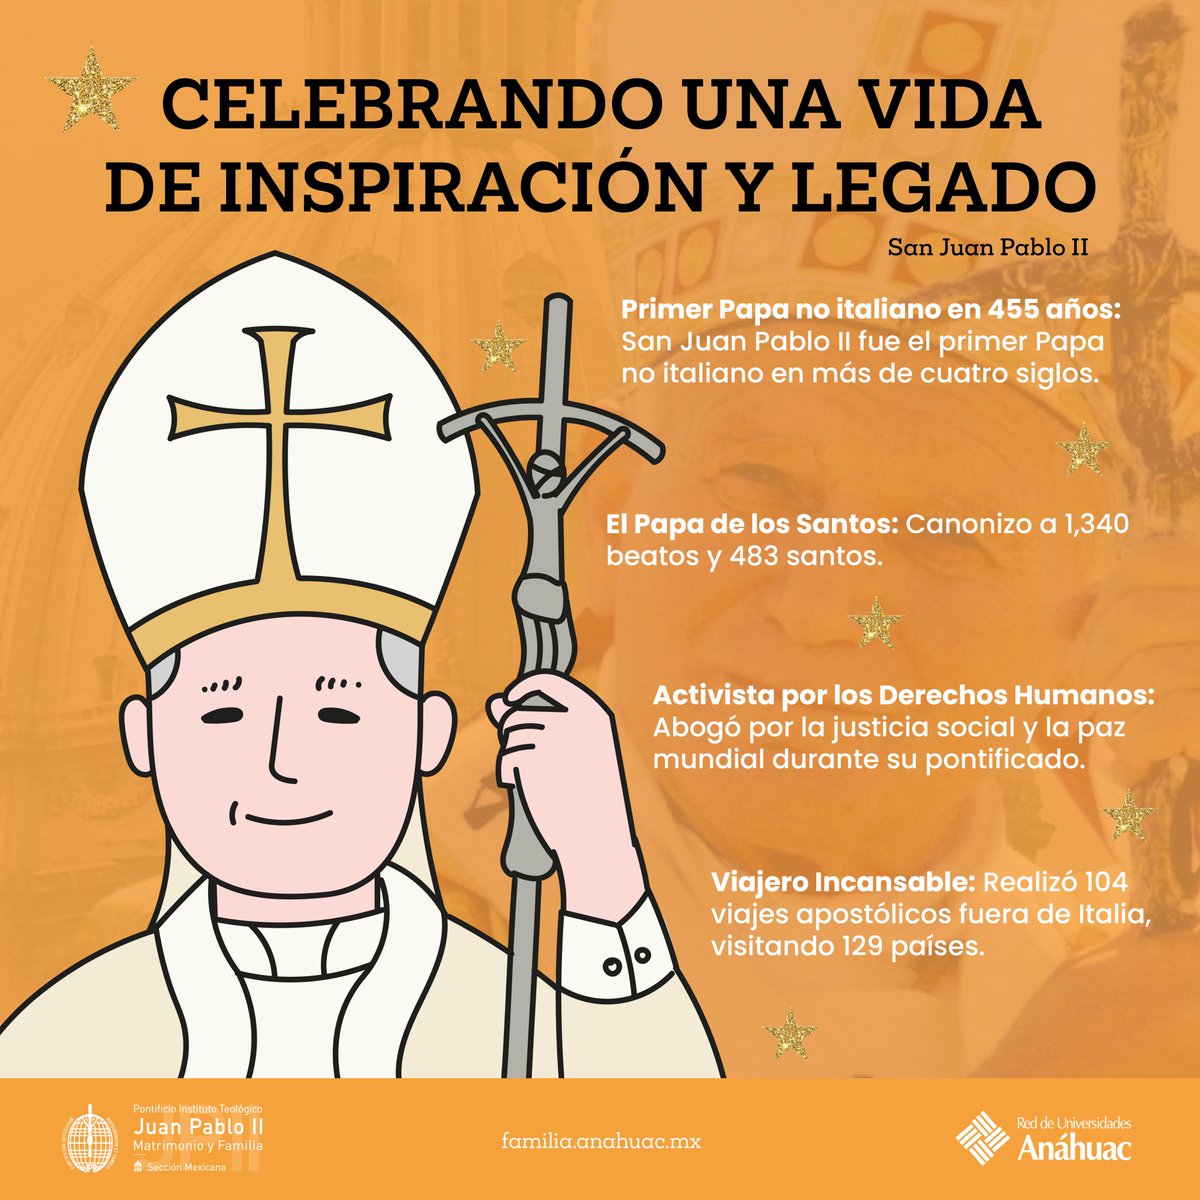 ¡Celebremos el legado de un líder extraordinario! En el día de  hoy conmemoramos el nacimiento de San Juan Pablo II, cuyo legado perdura  como faro de esperanza y amor para el mundo. 

#SomosFamilia #SanJuanPabloII #JPII